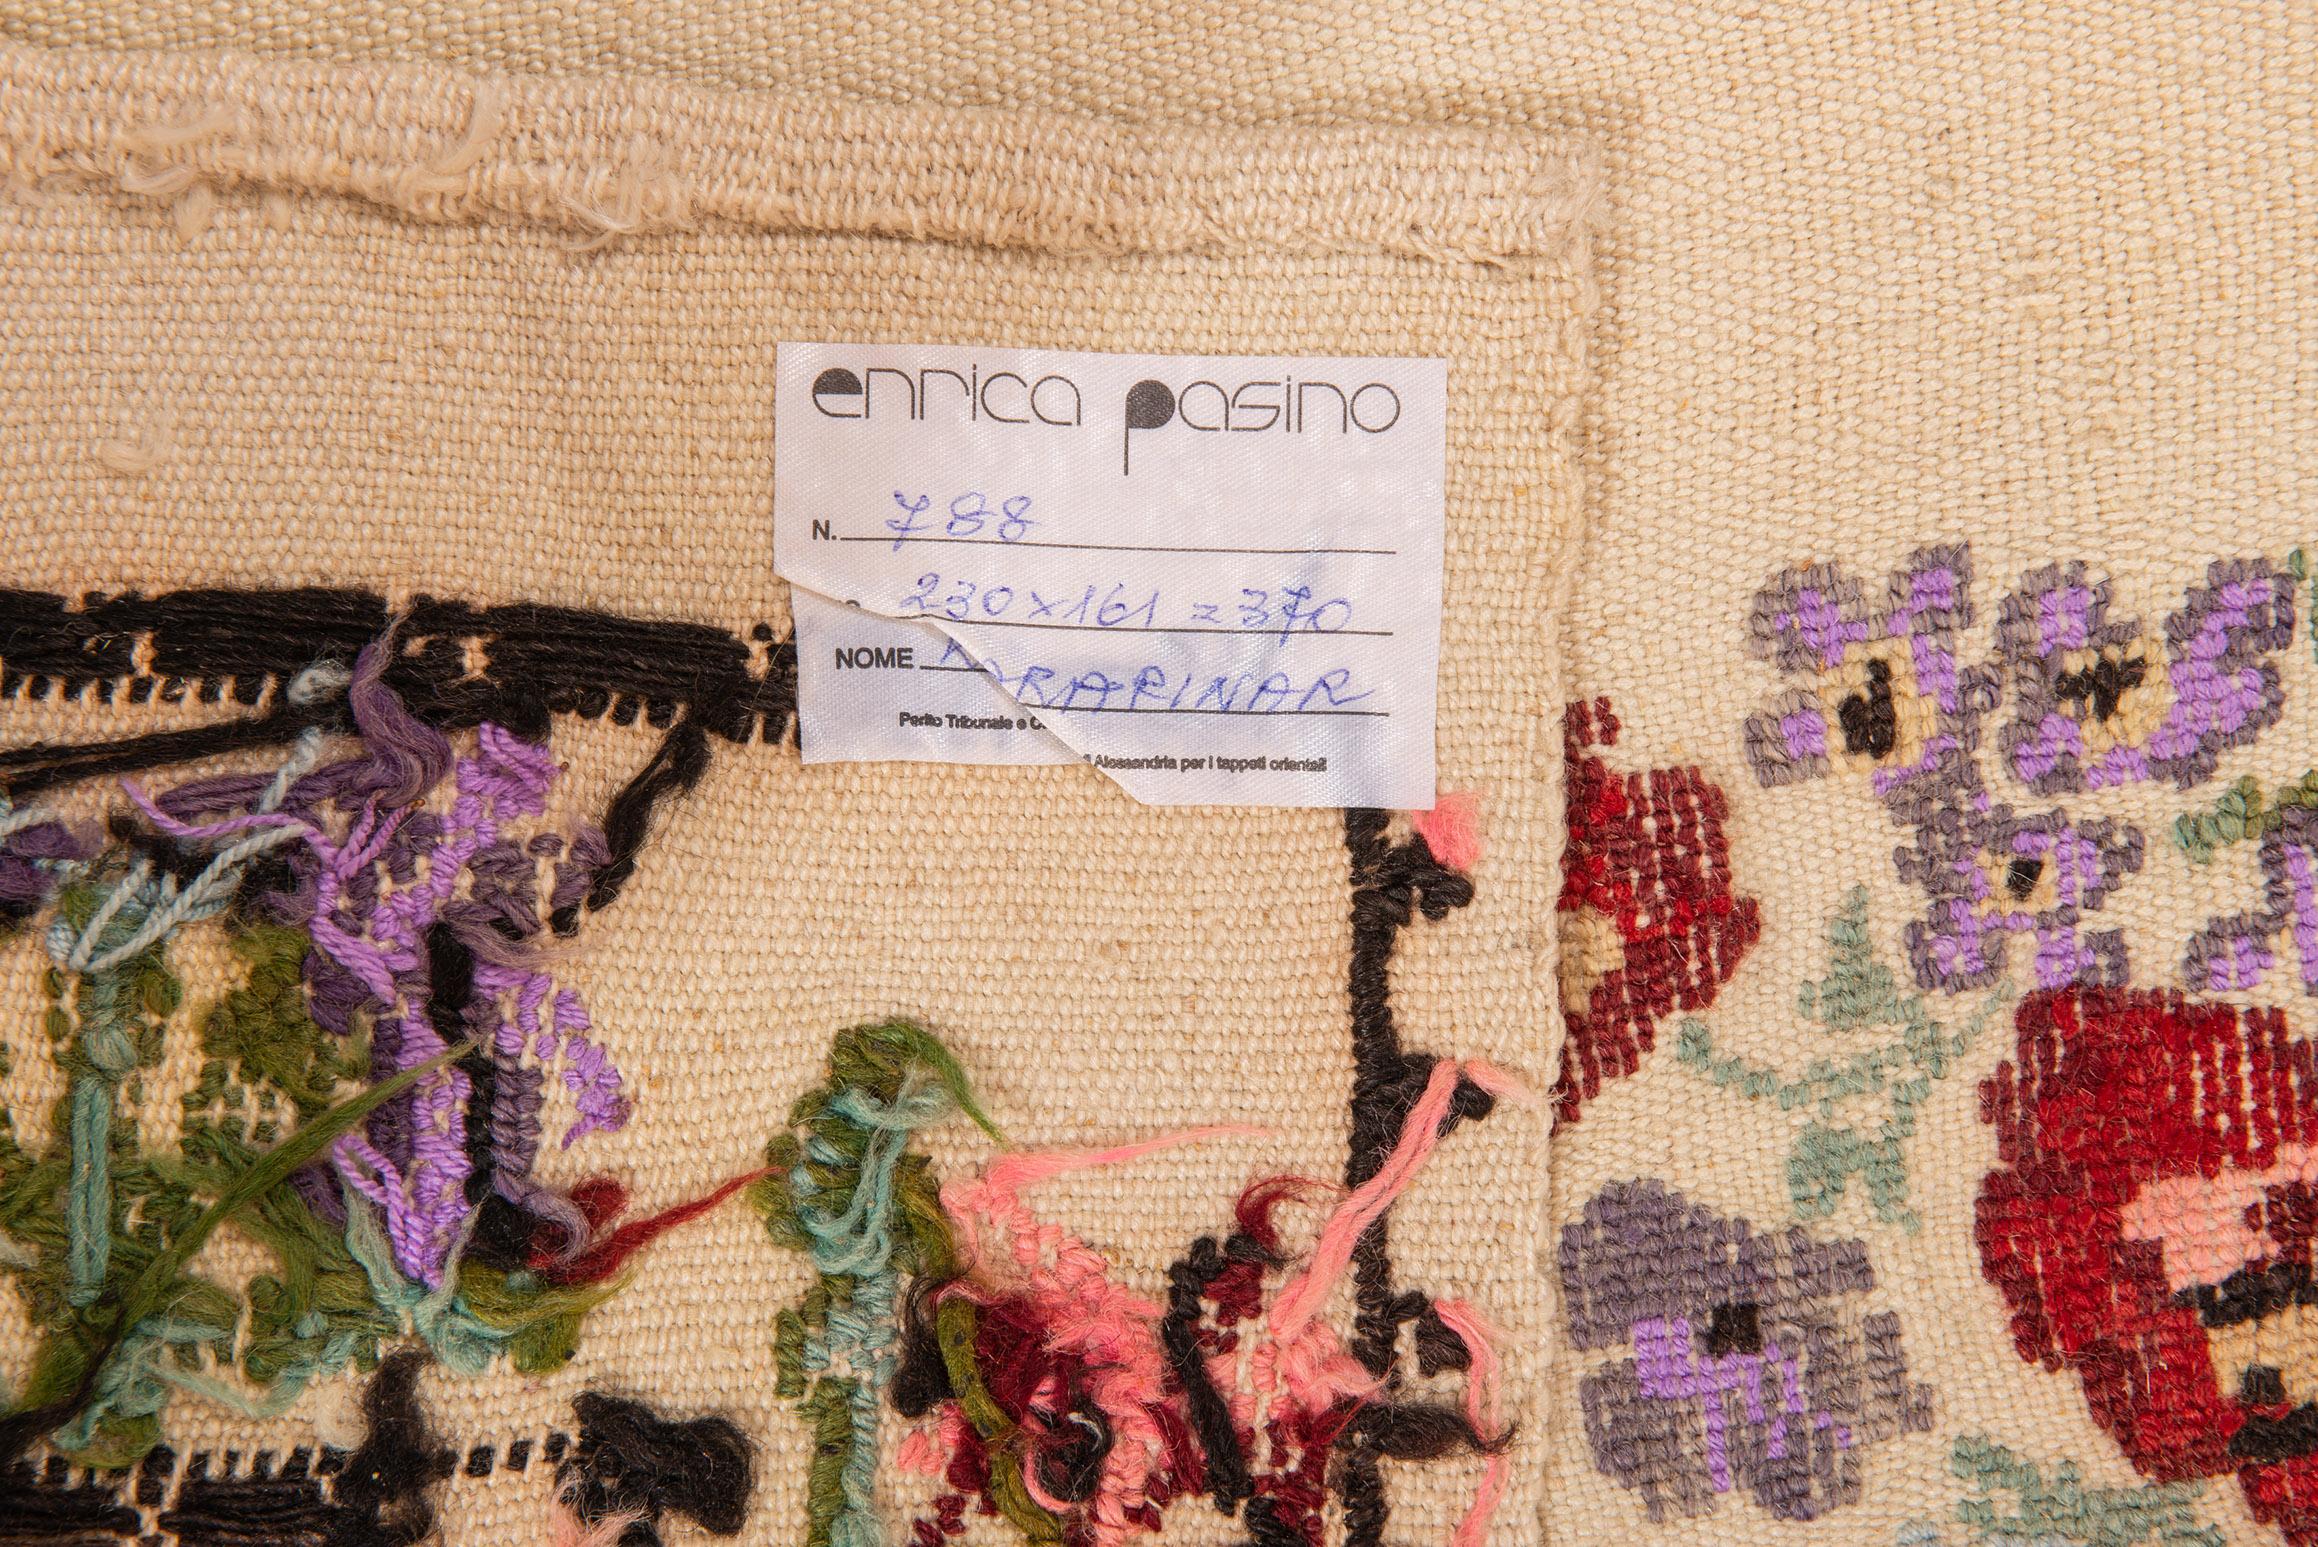 Nr. 788 - Tapis ou tissu brodé à la main par des jeunes filles nomades turques pour leur trousseau de mariage. Kilim à ondes plates : ce n'est pas un vrai tapis, mais un tissu fabriqué par des jeunes filles nomades turques, il est rare.
Prix